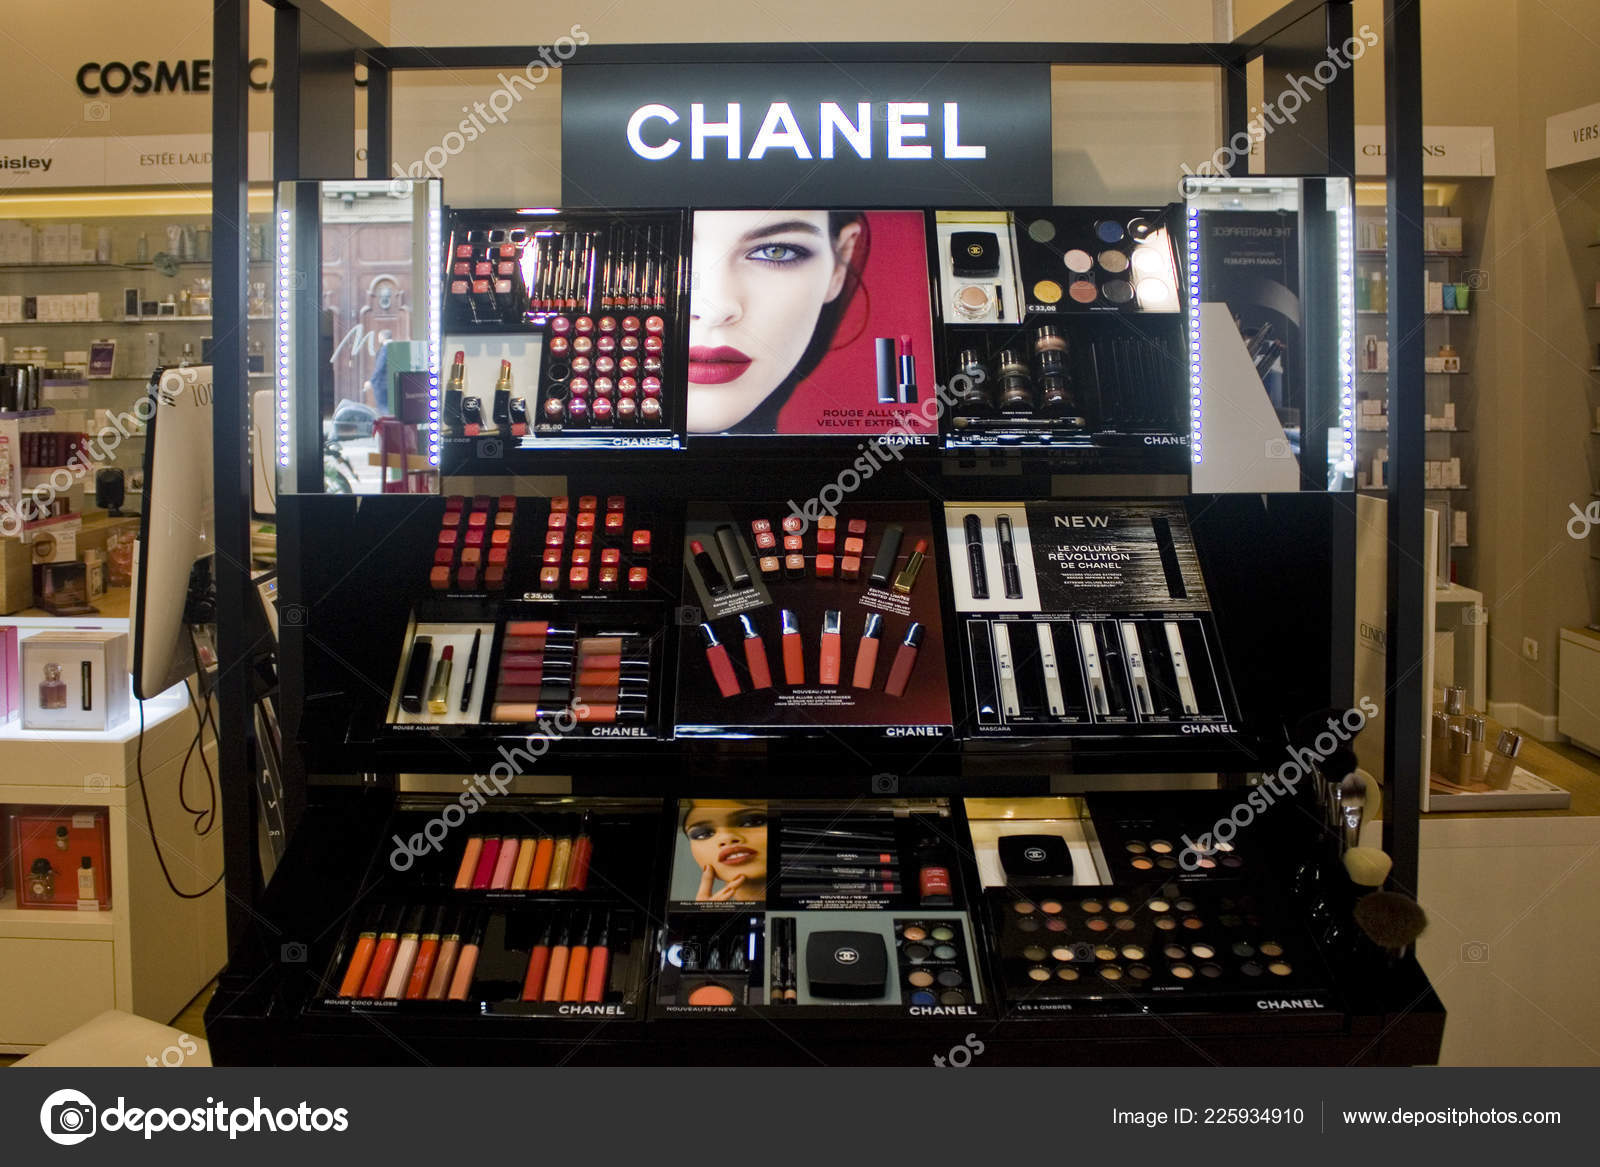 Chanel opens Battersea beauty and eyewear boutique